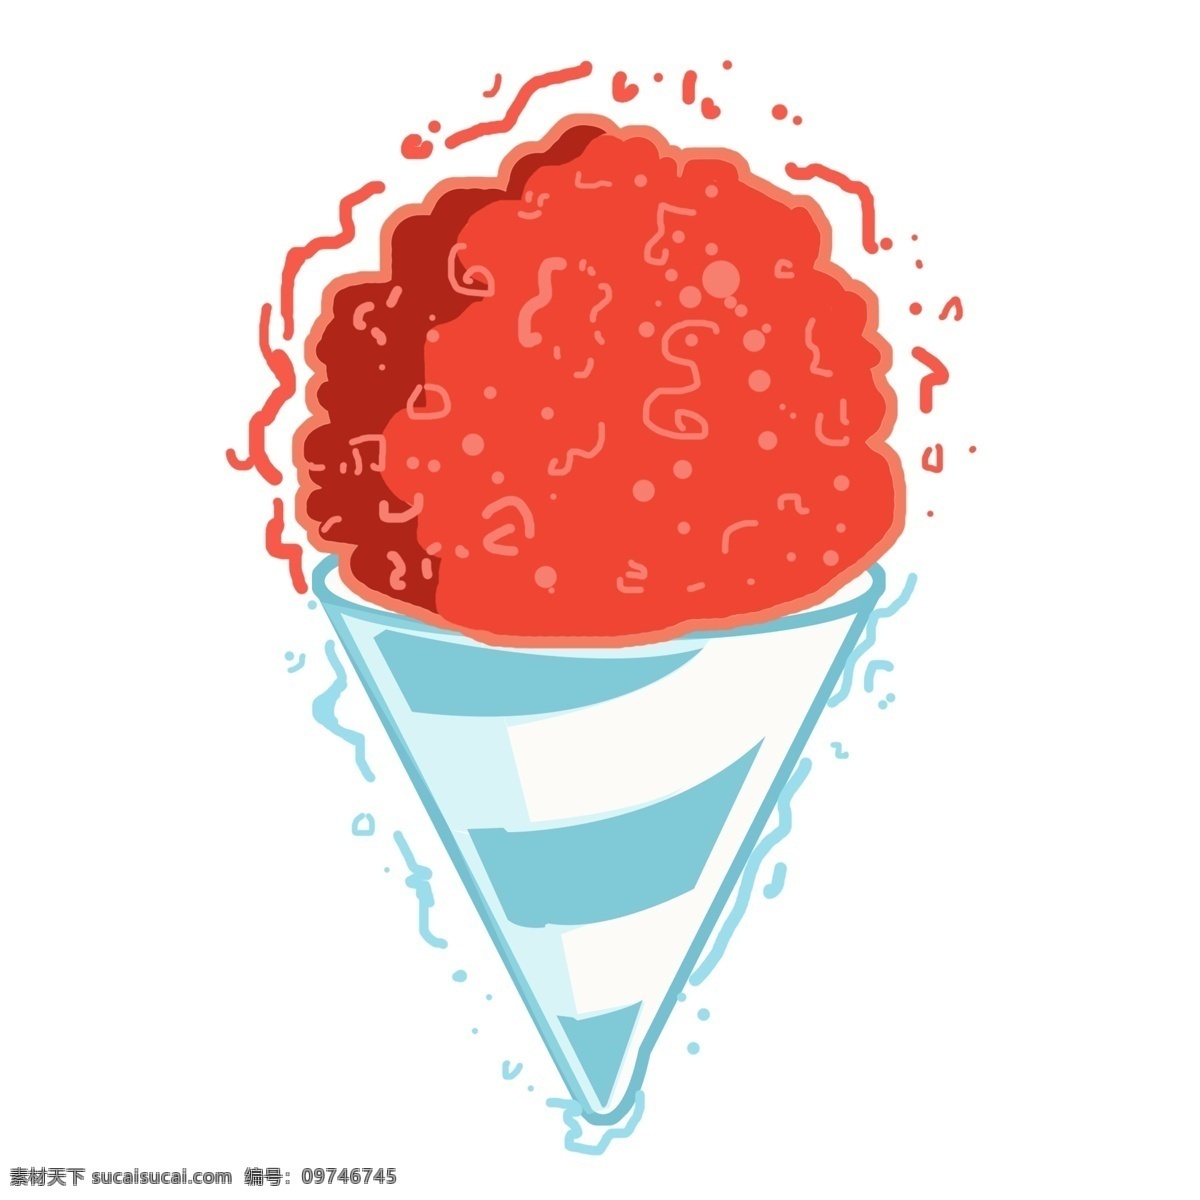 卡通 冰淇淋 设计素材 夏季食物 创意冰棒 手绘夏季冰棒 矢量夏季食物 矢量冰棒刨冰 夏至 简约刨冰